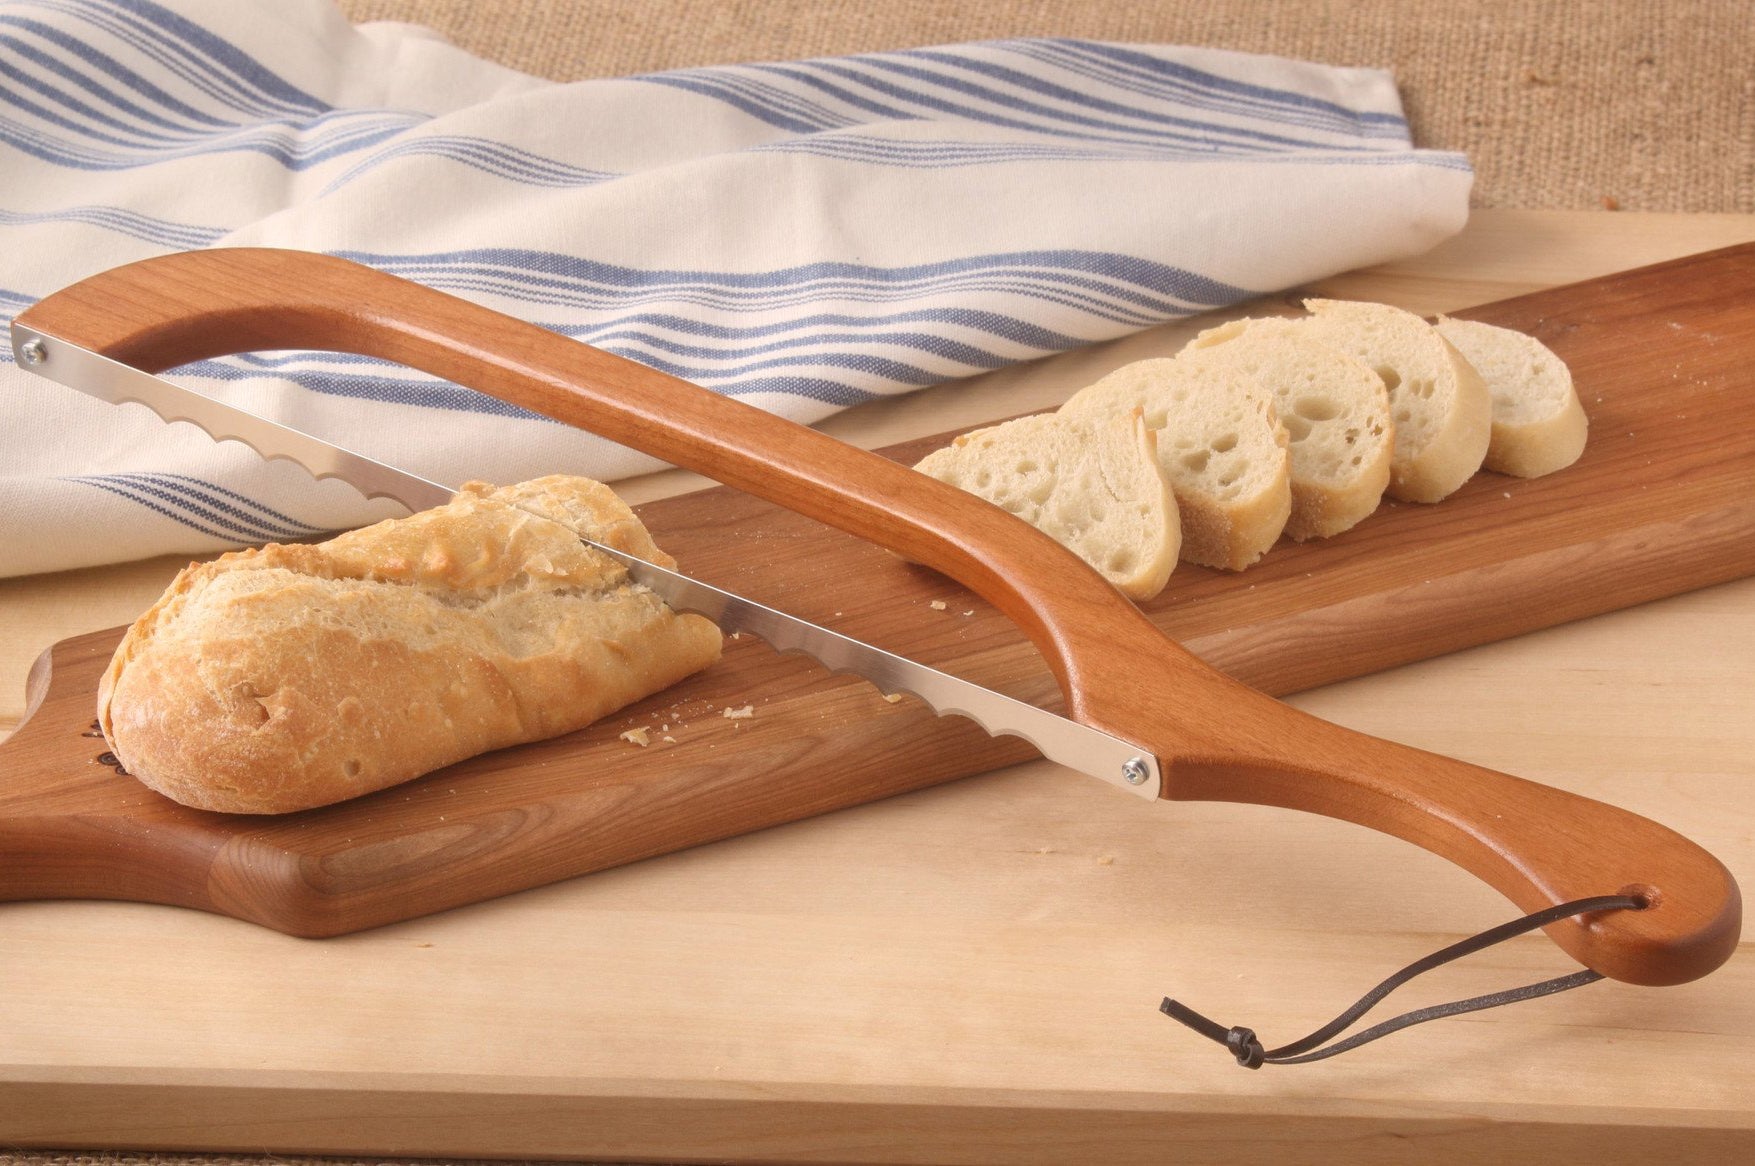 Original Walnut fiddle bow bread knife bread saw